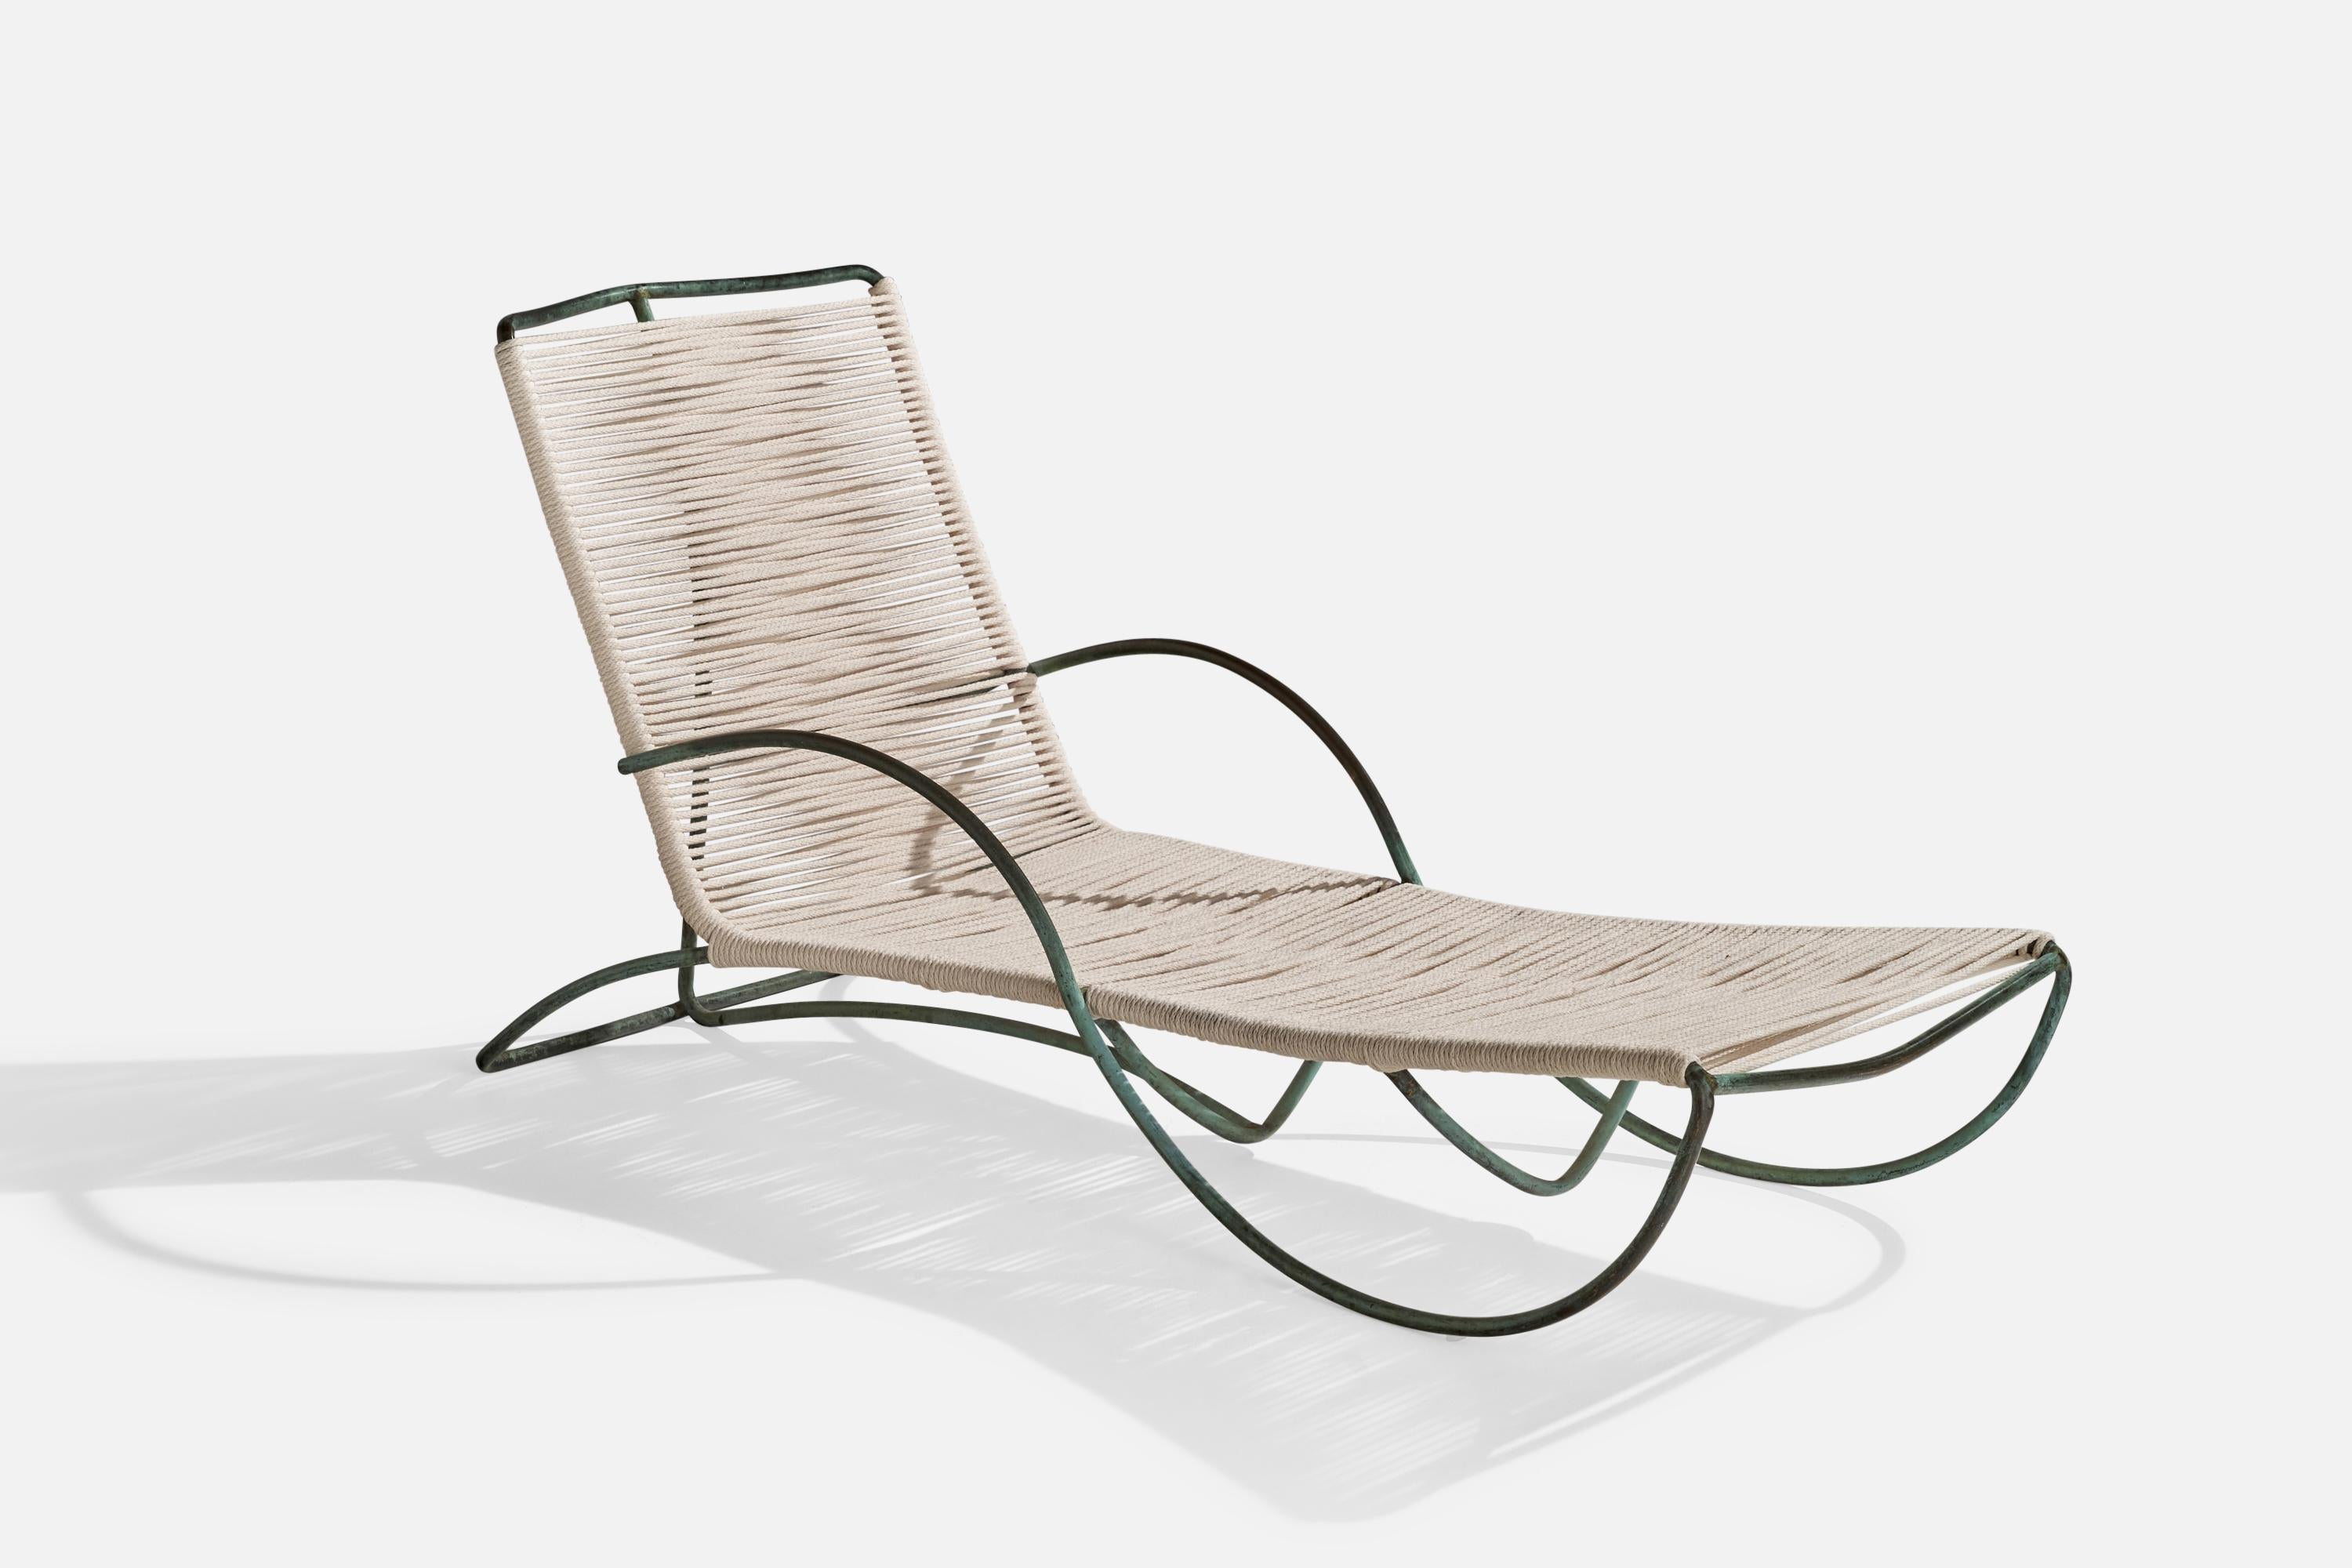 Chaise longue en bronze et cordon de tissu conçue par Walter Lamb et produite par Brown Jordan, États-Unis, c. 1955.

